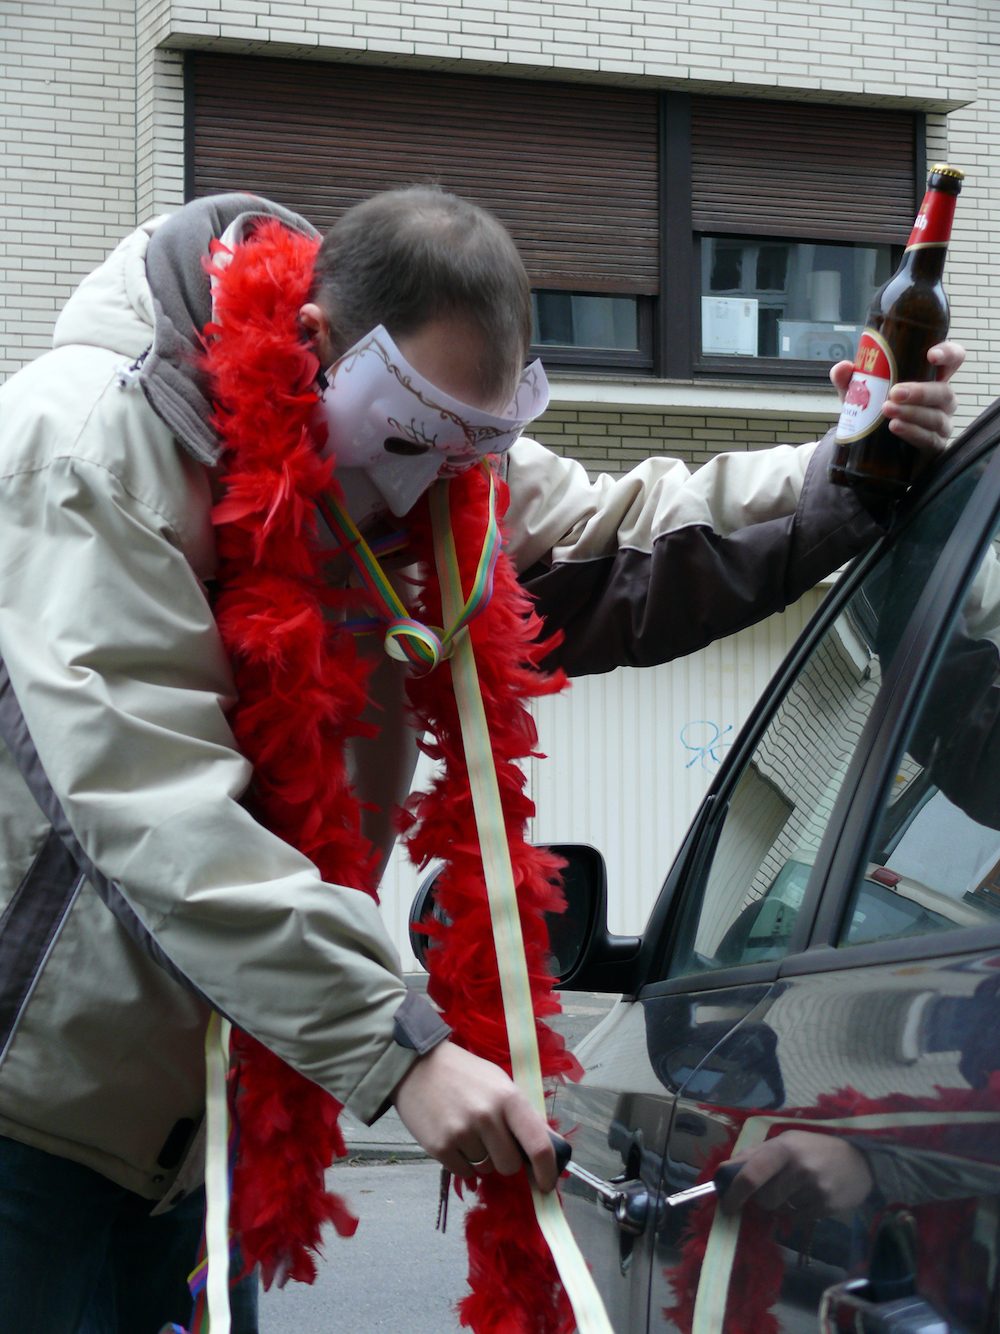 Verkehrswacht im Kreis Warendorf rät zu Karneval: Kein Alkohol am Steuer / Lenker